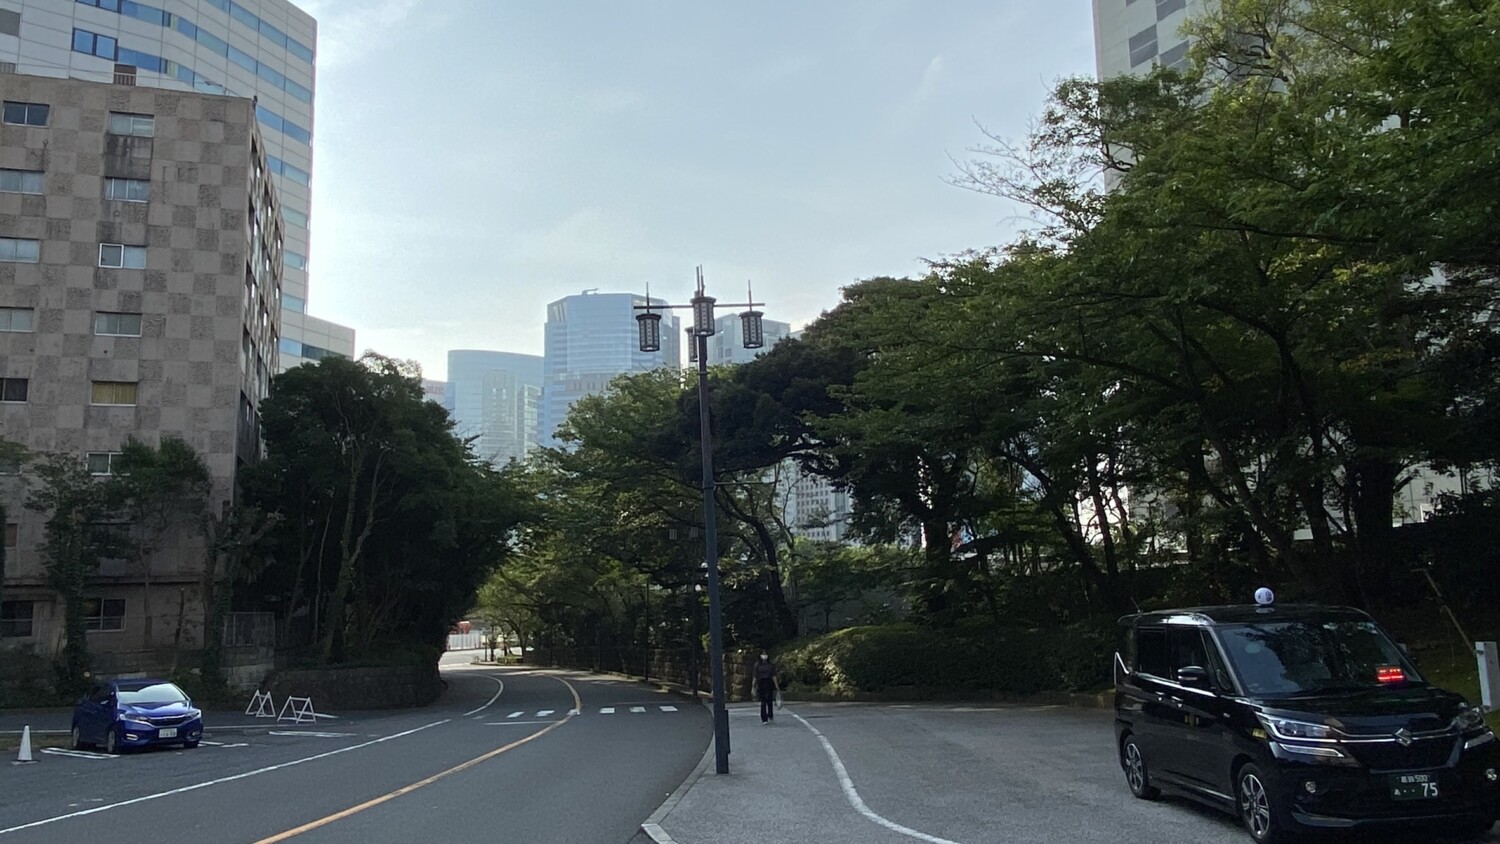 櫻花塔王子飯店門前的櫻花坂